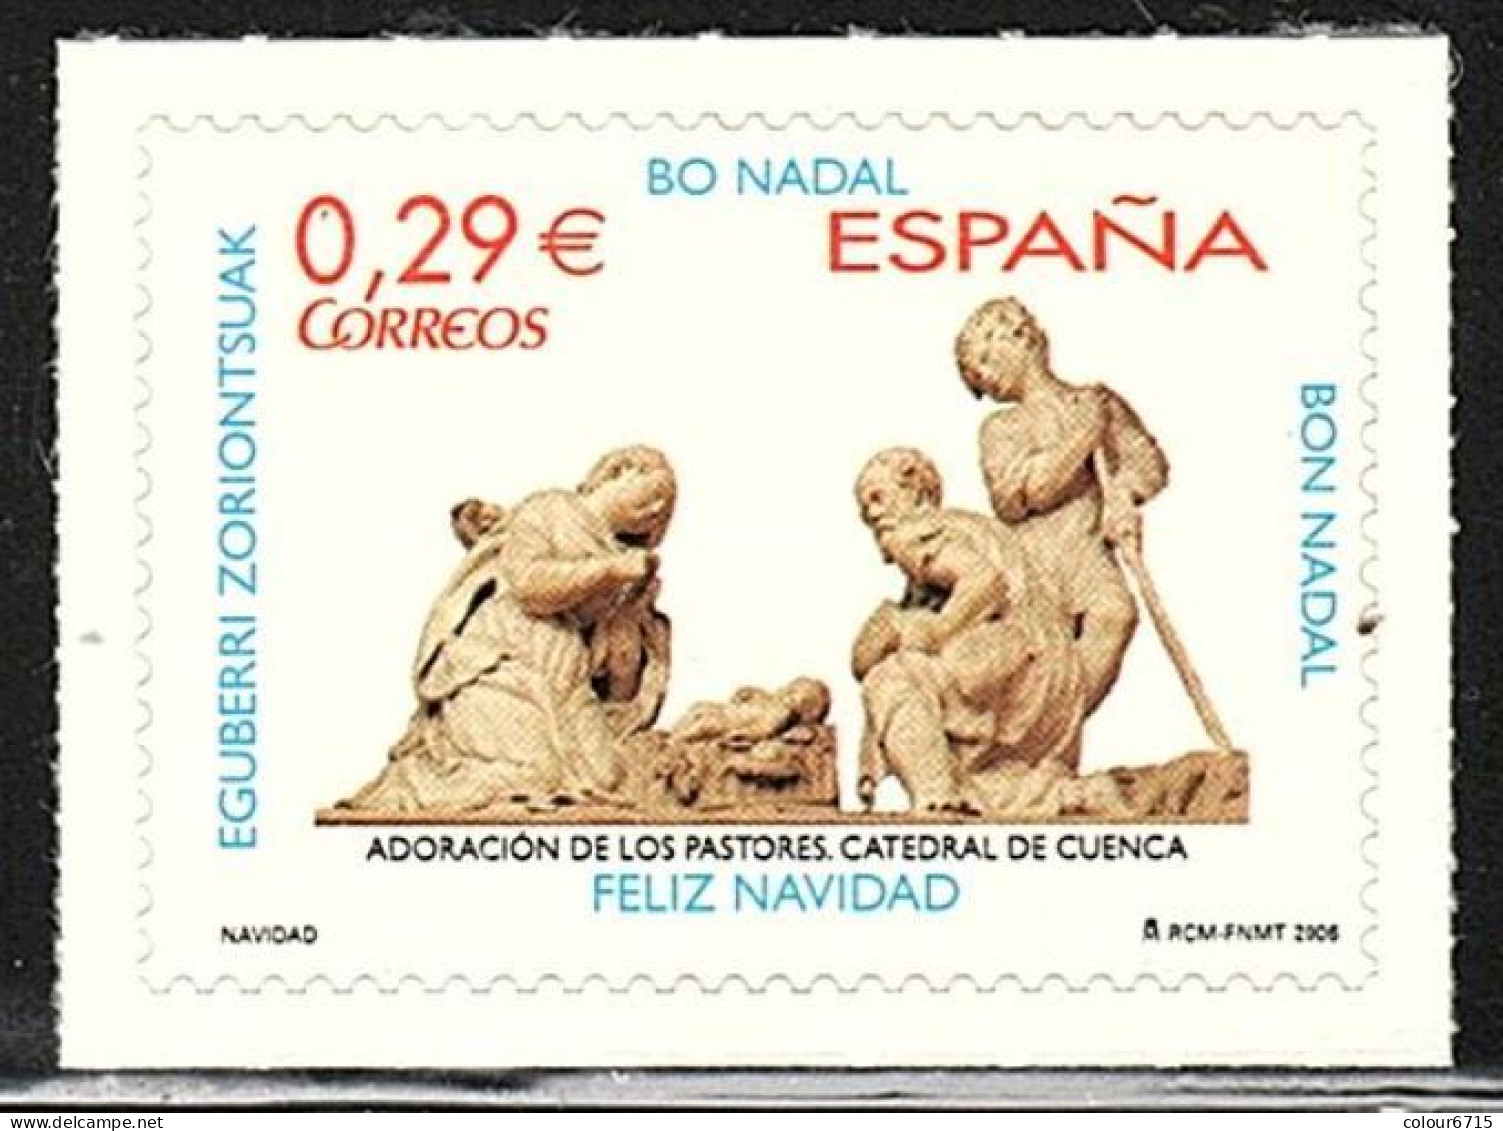 Spain 2006 Navidad Christmas Adoracion De Los Pastores Catedral De Cuenca Stamp 1v MNH - Ungebraucht